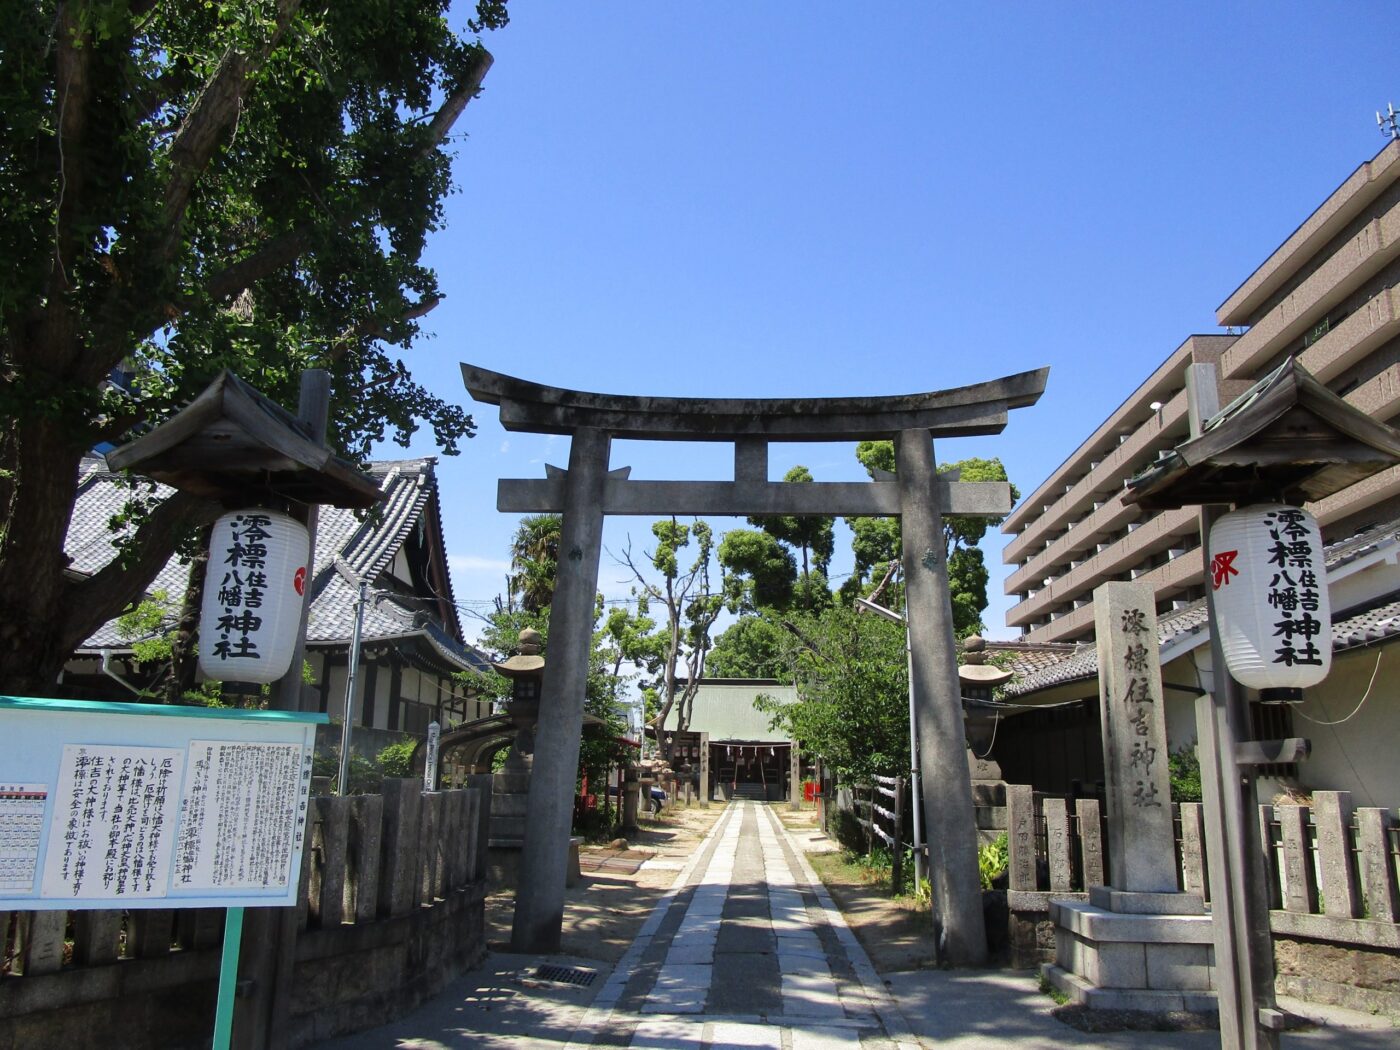 澪標住吉神社 神社結婚式なび 業界最大級の神前式情報